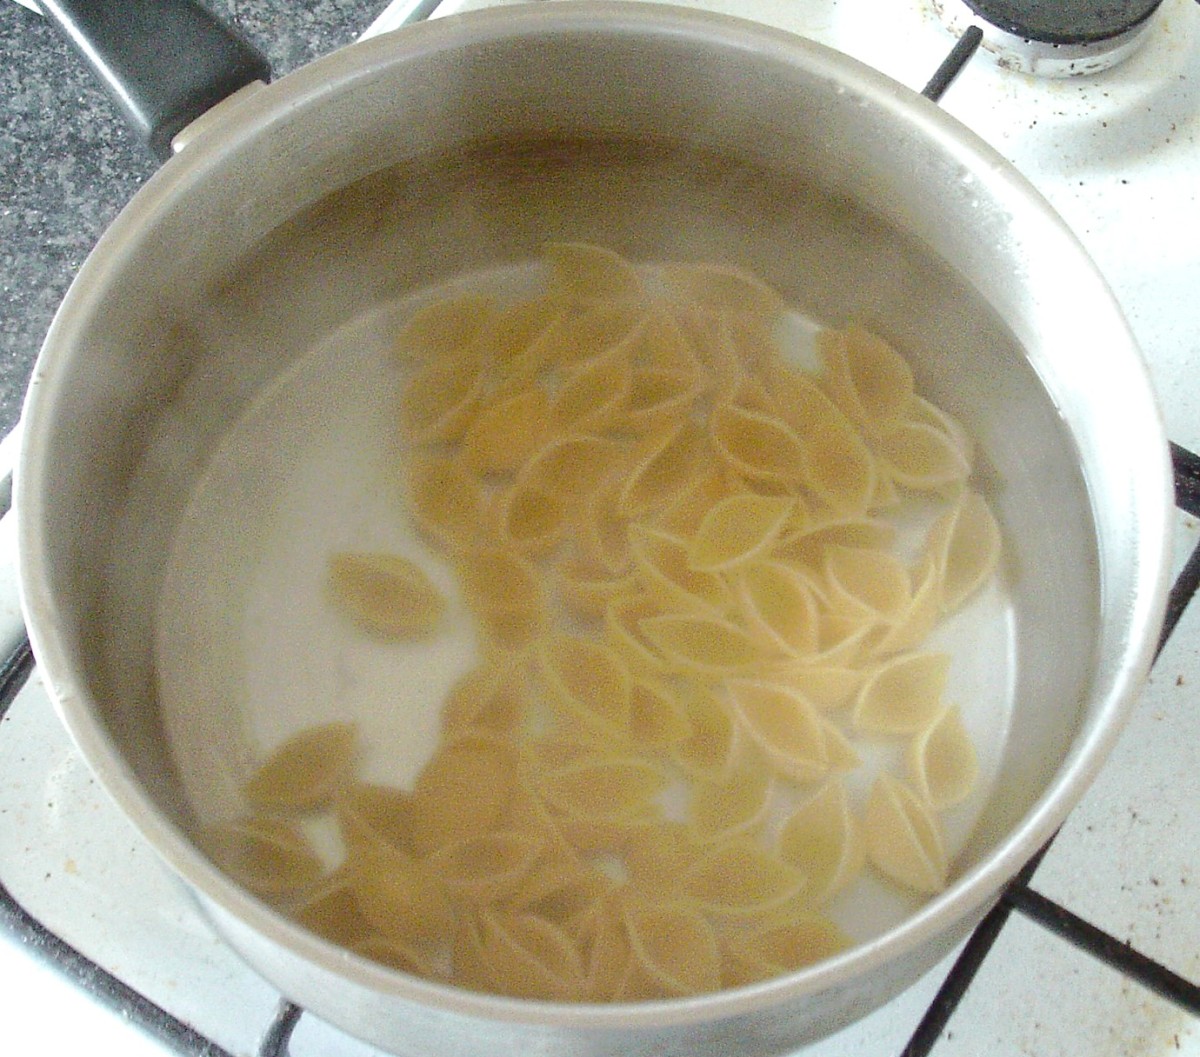 Cook the conchiglie pasta